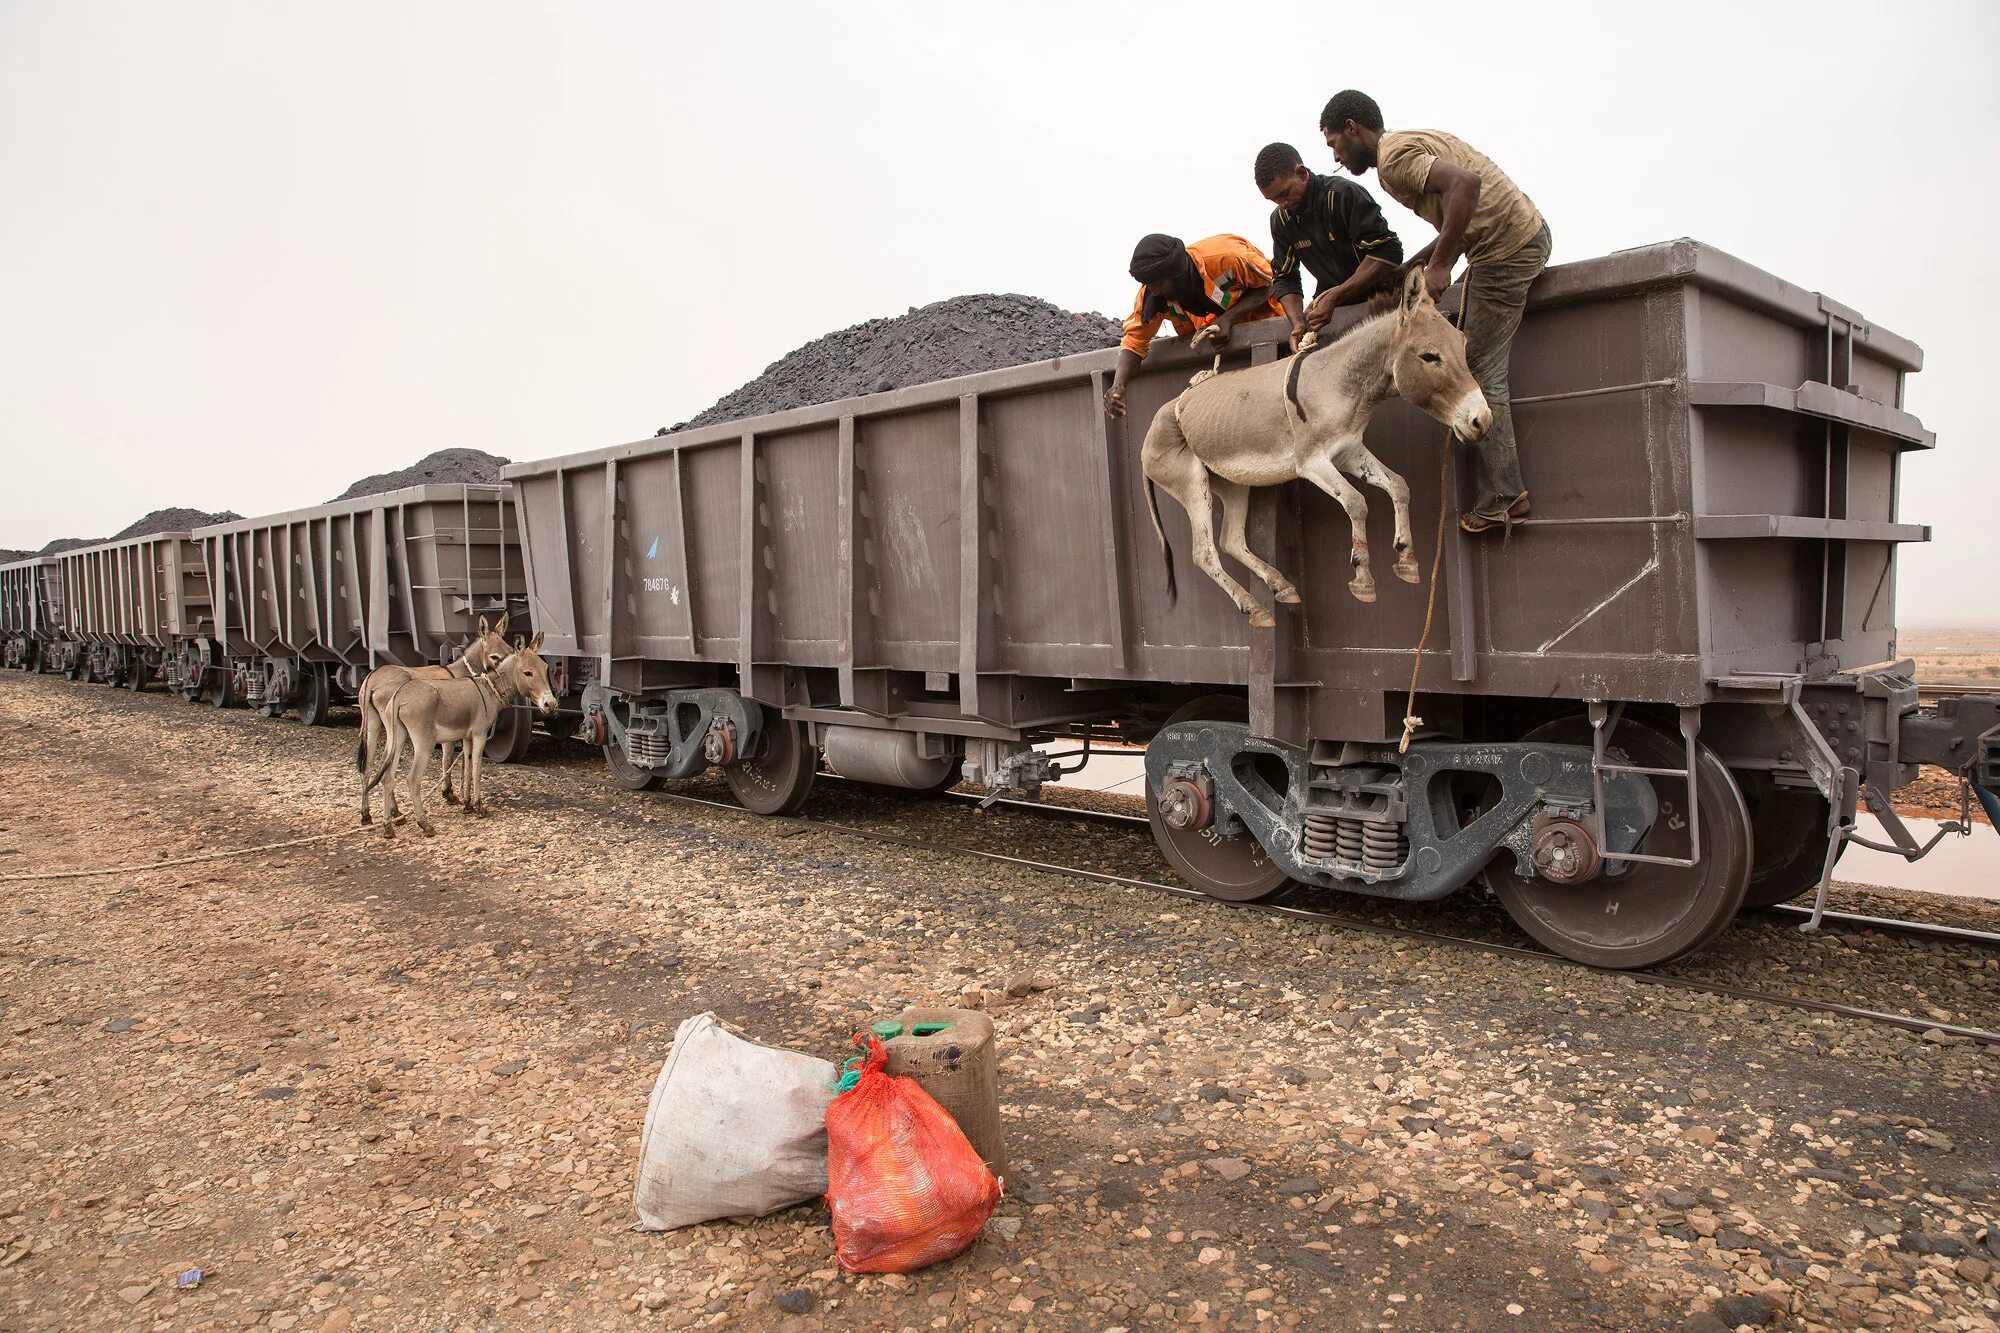 Длинные вагоны поездов. Самый длинный поезд в мире 682 вагона. Транспортировка животных. Вагон для перевозки животных. Перевозка живности в вагонах.